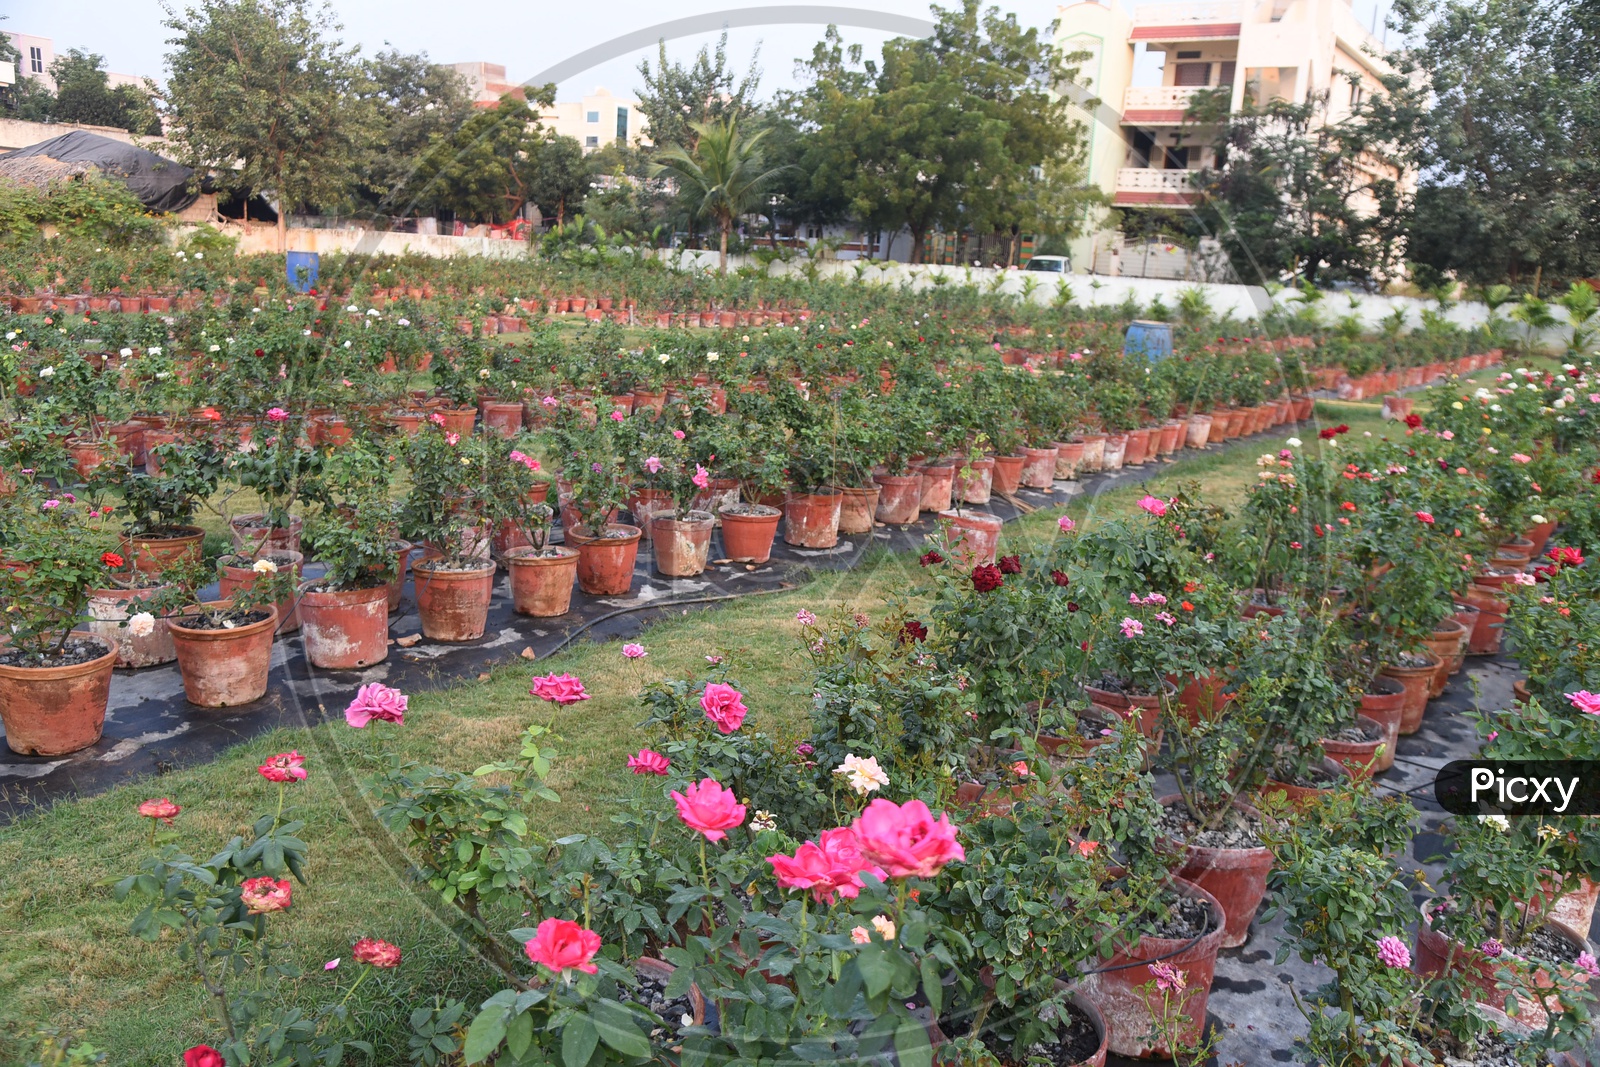 Rose plants in a Nursery